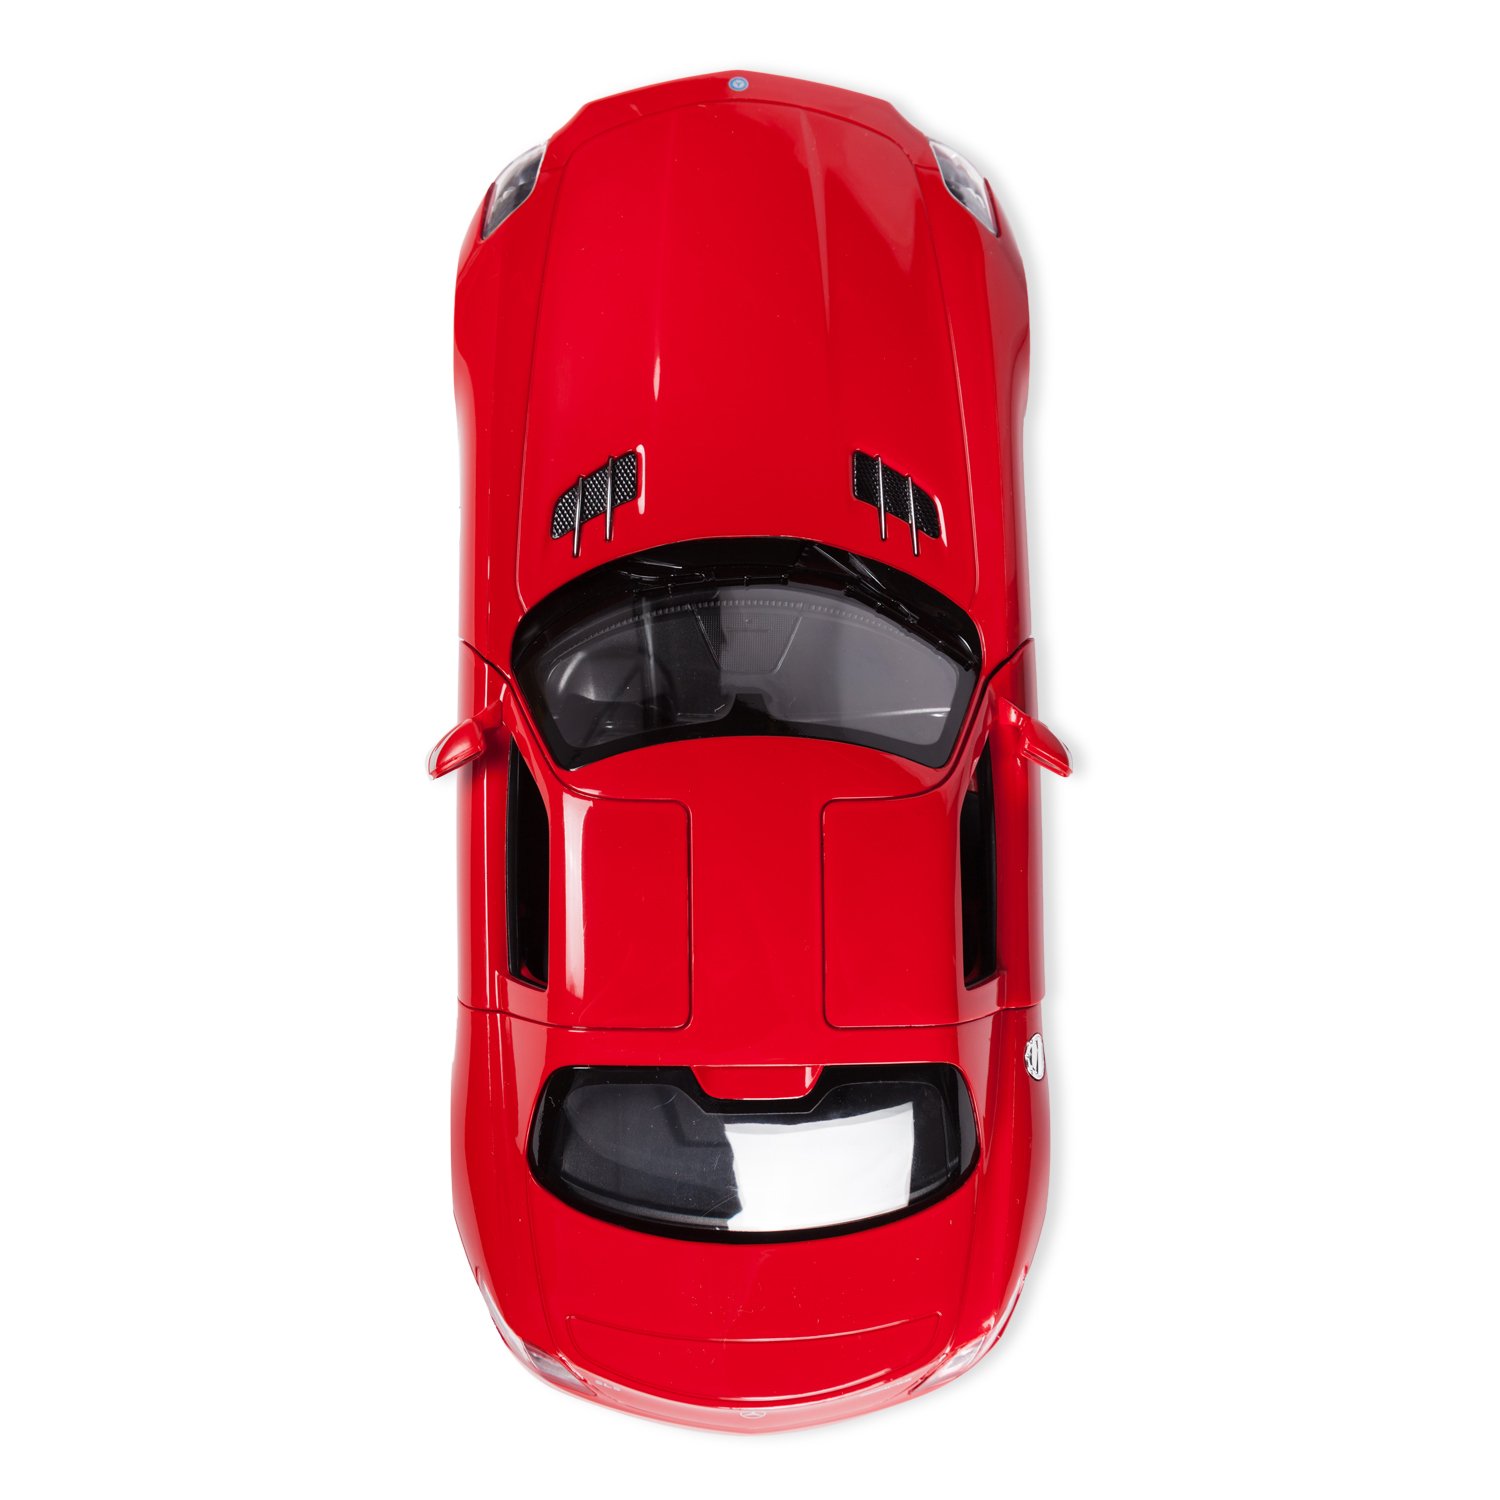 Машинка радиоуправляемая Rastar Mercedes-Benz SLS AMG 1:14 красная